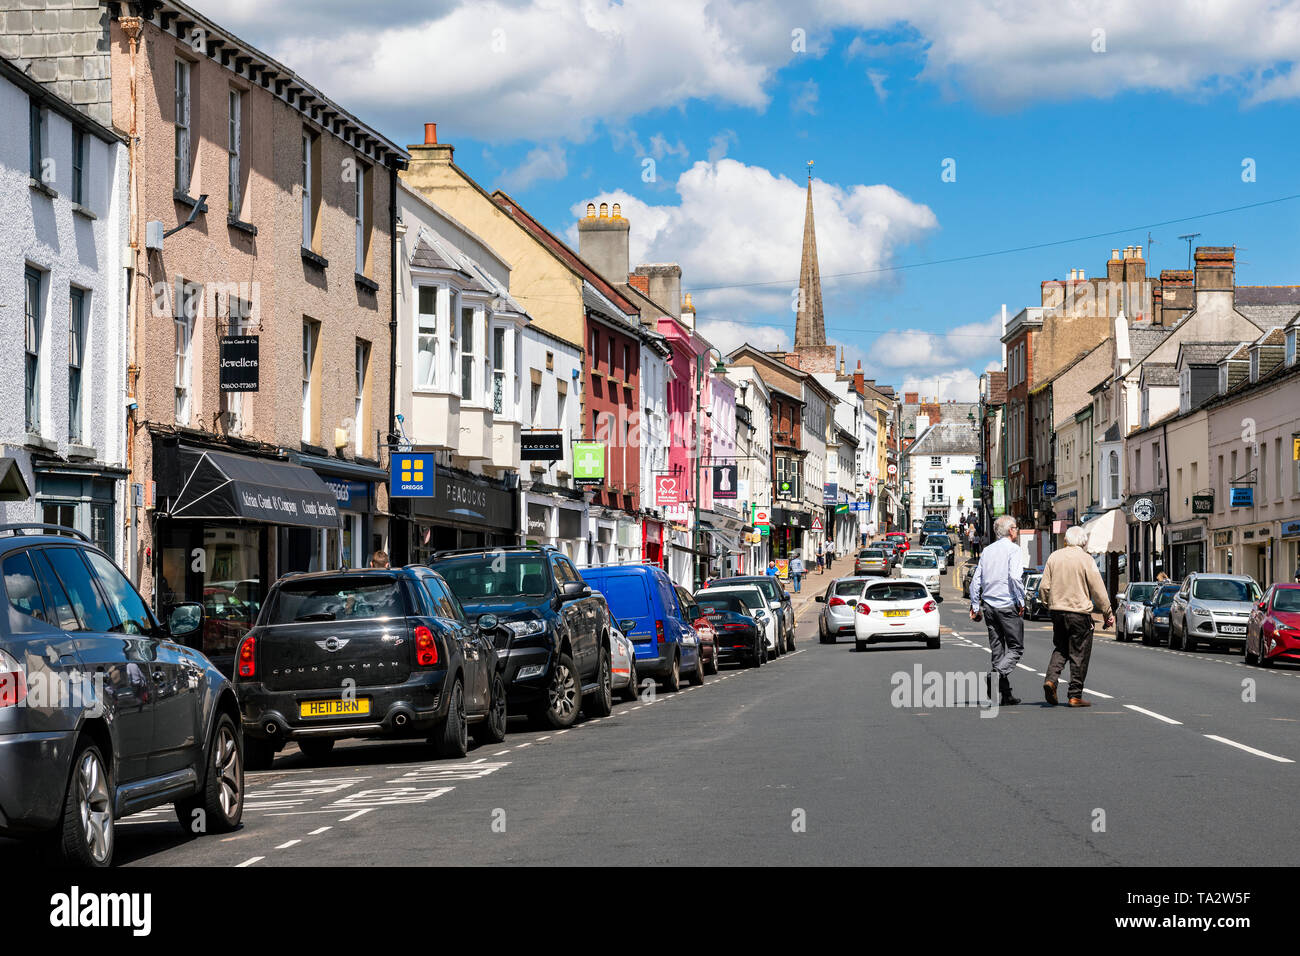 El centro de la ciudad de Monmouth, Gales, Reino Unido. Foto de stock